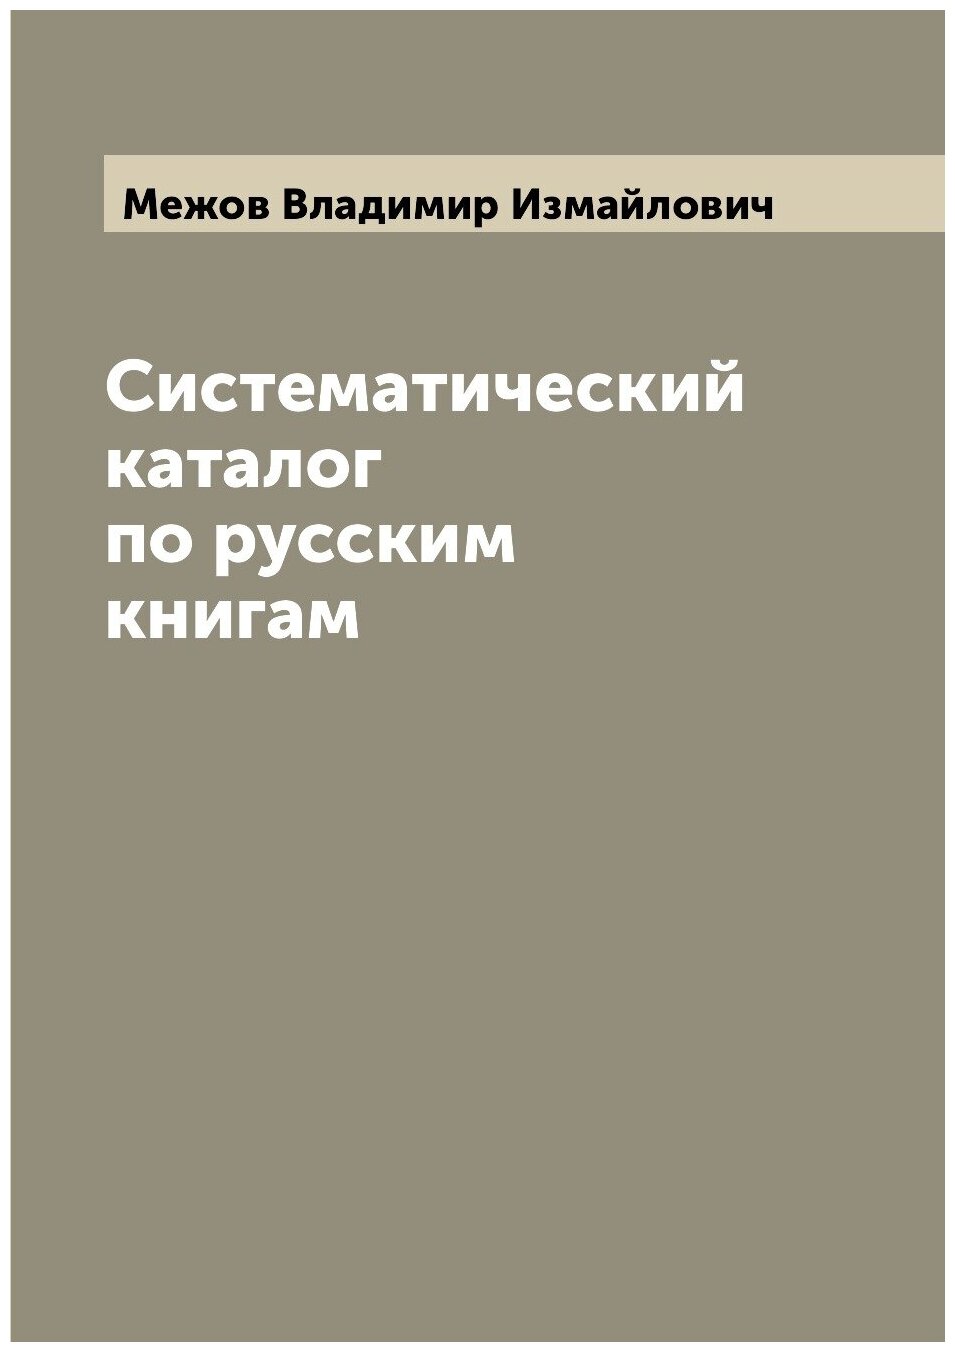 Систематический каталог по русским книгам